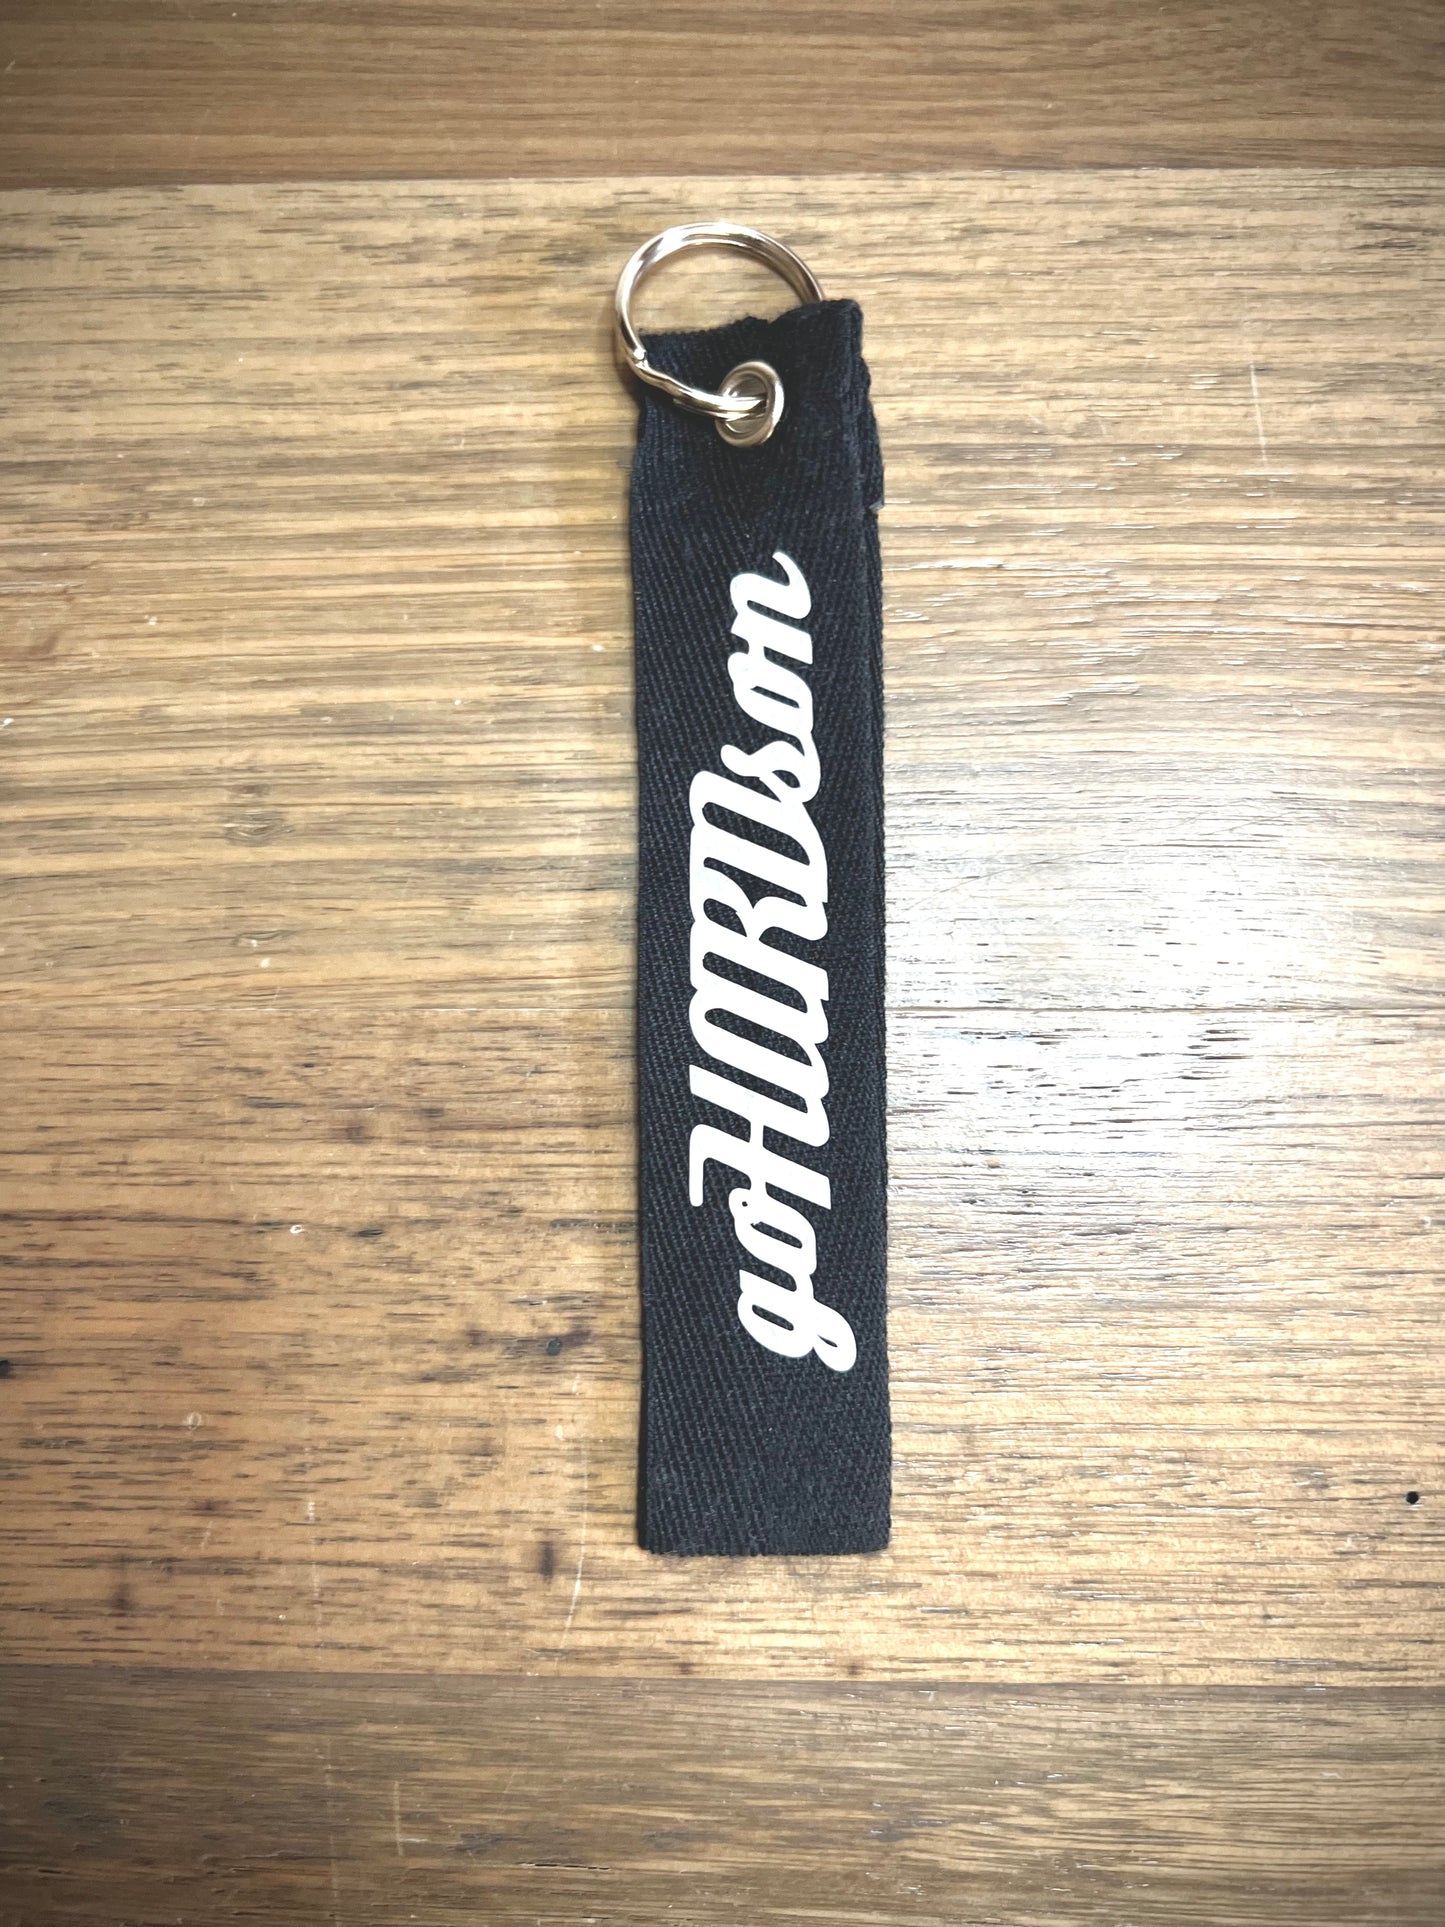 goHARDson shorty key strap